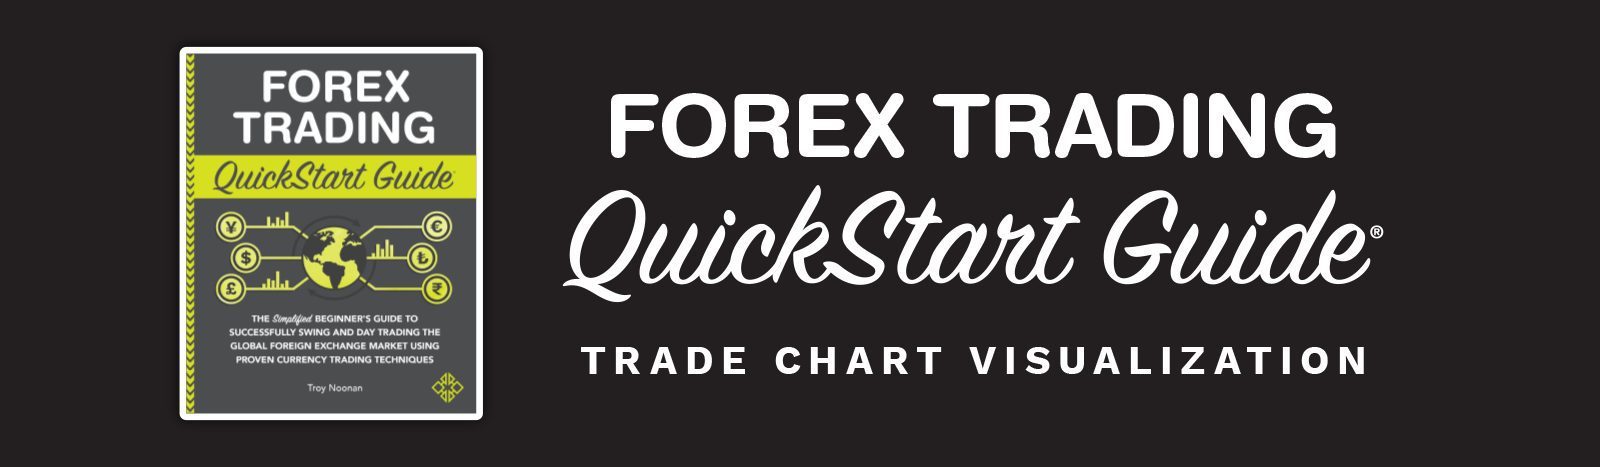 Forex_TradeChartVisual_header